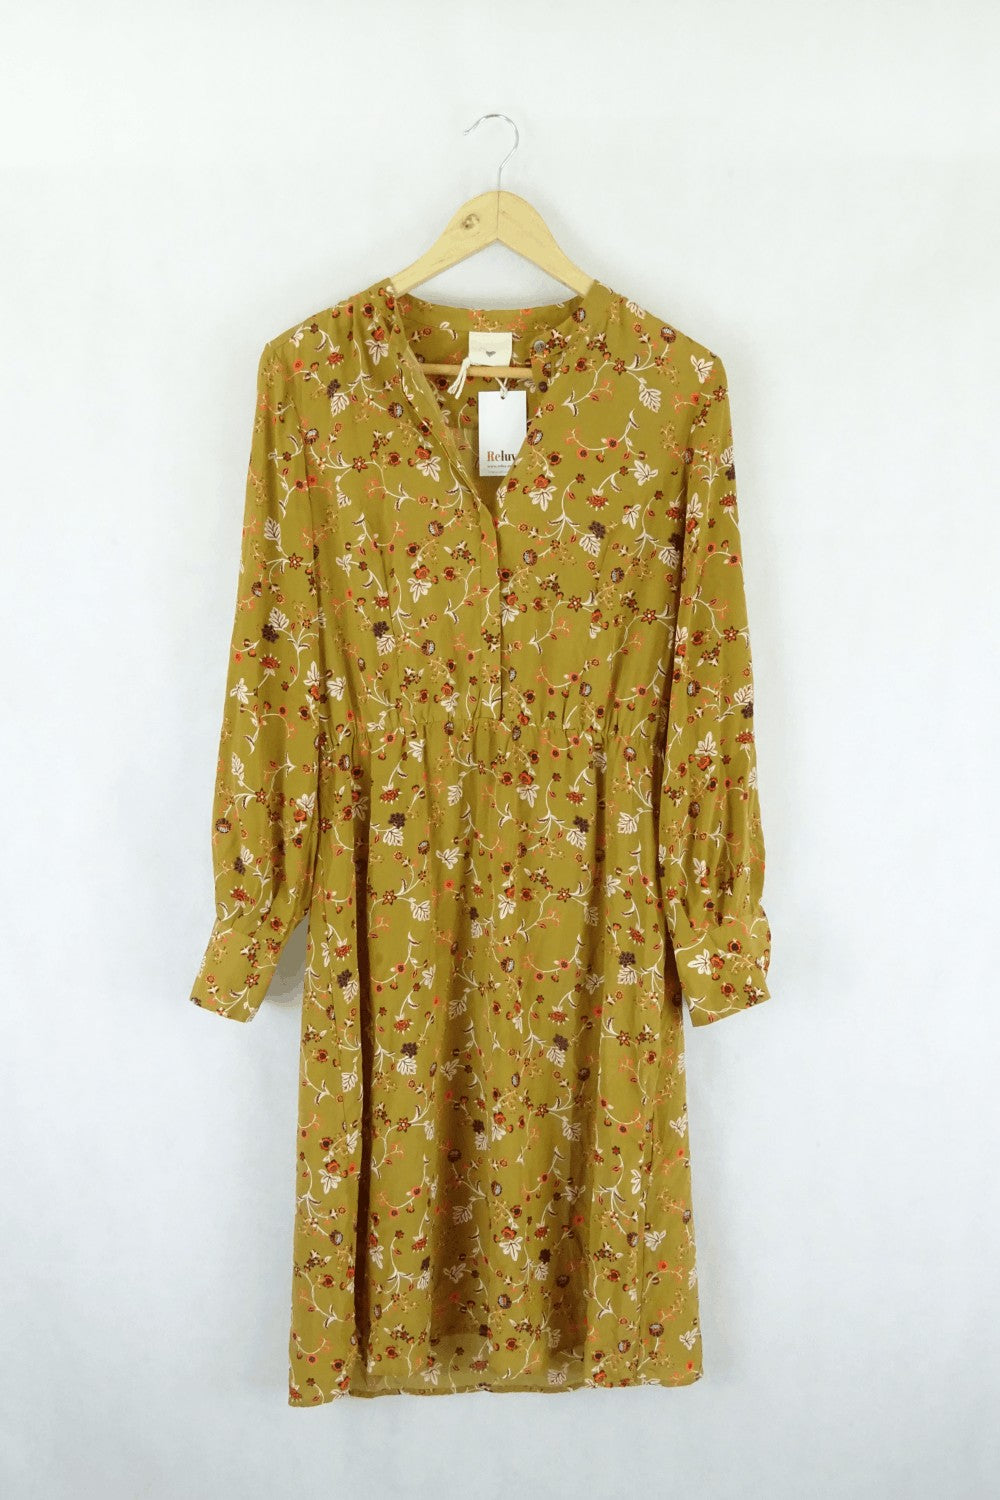 Julie Fagerholt Heartmade Mustard Floral Dress 38 (AU10)